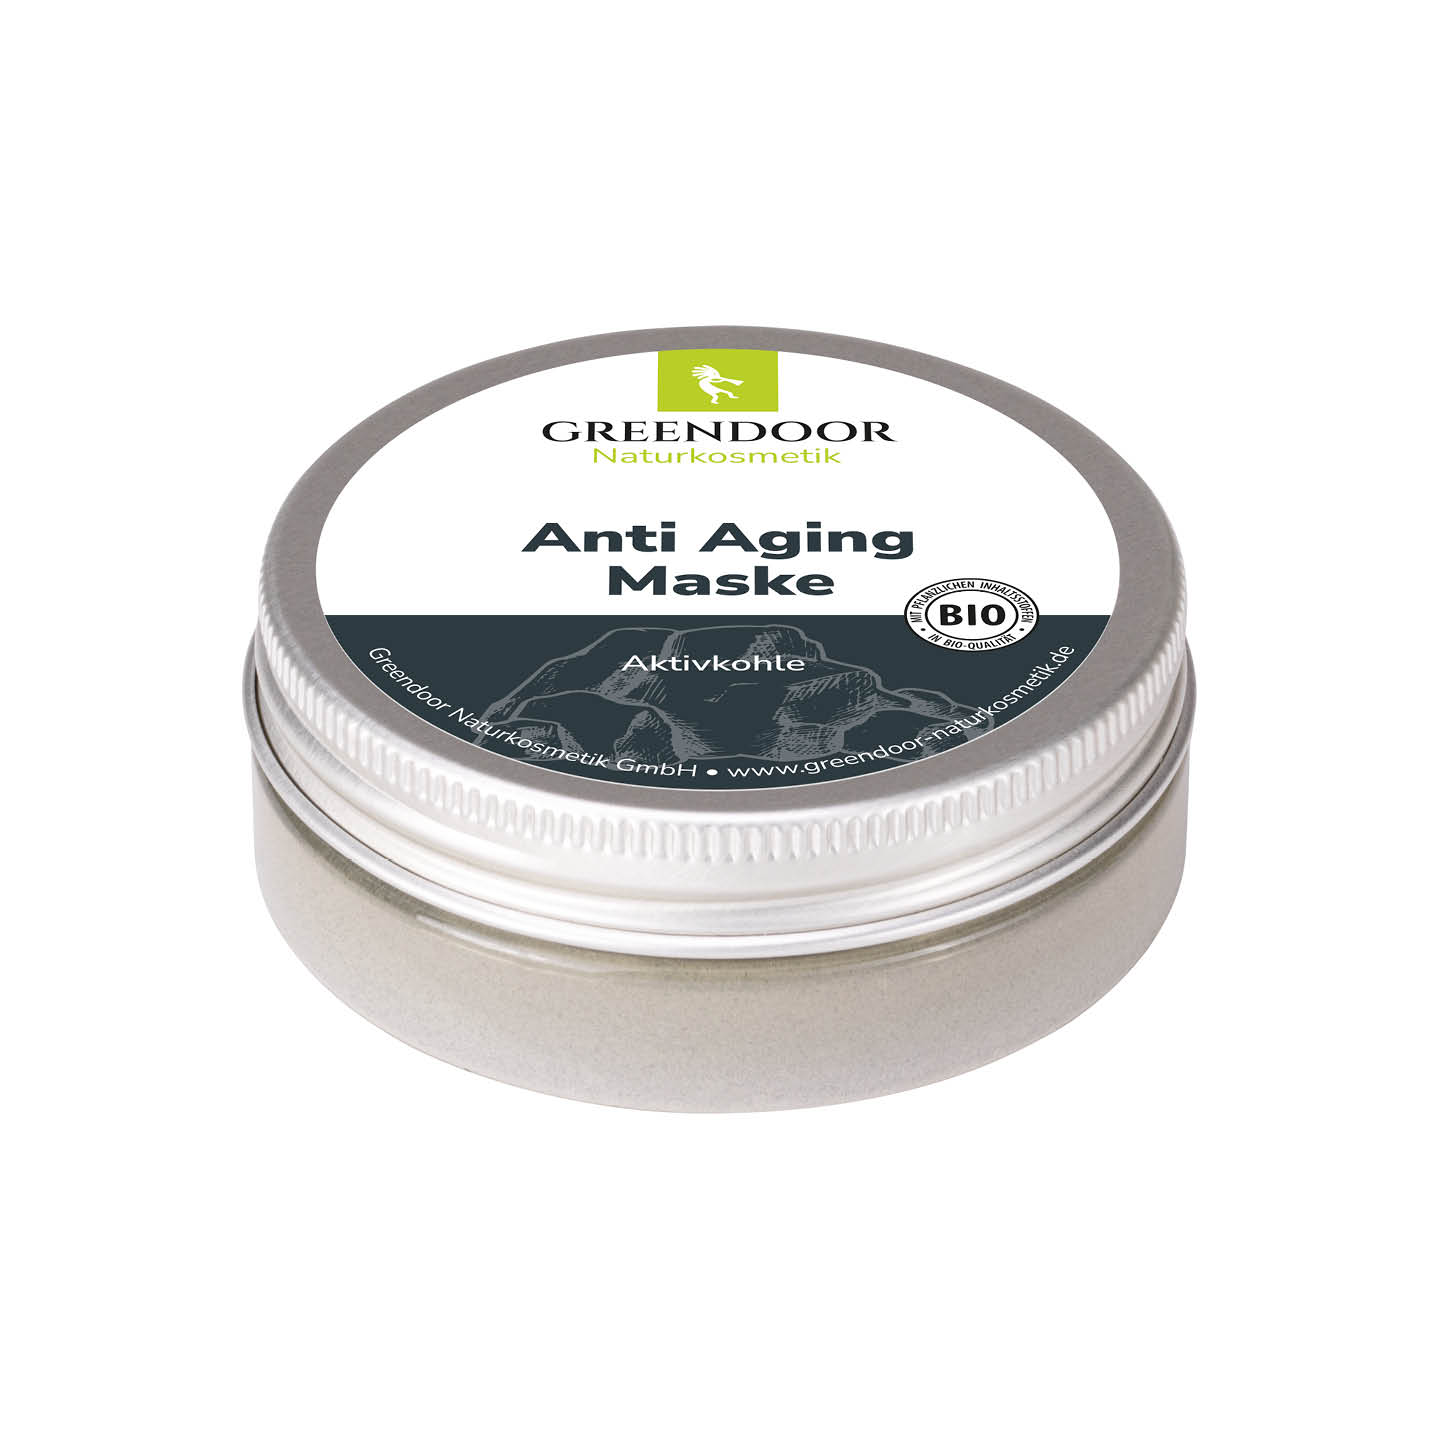 Anti Aging Maske Aktivkohle, 35g Pulver, pflanzlich, Gesichtsmaske für 5-7 Anwendungen